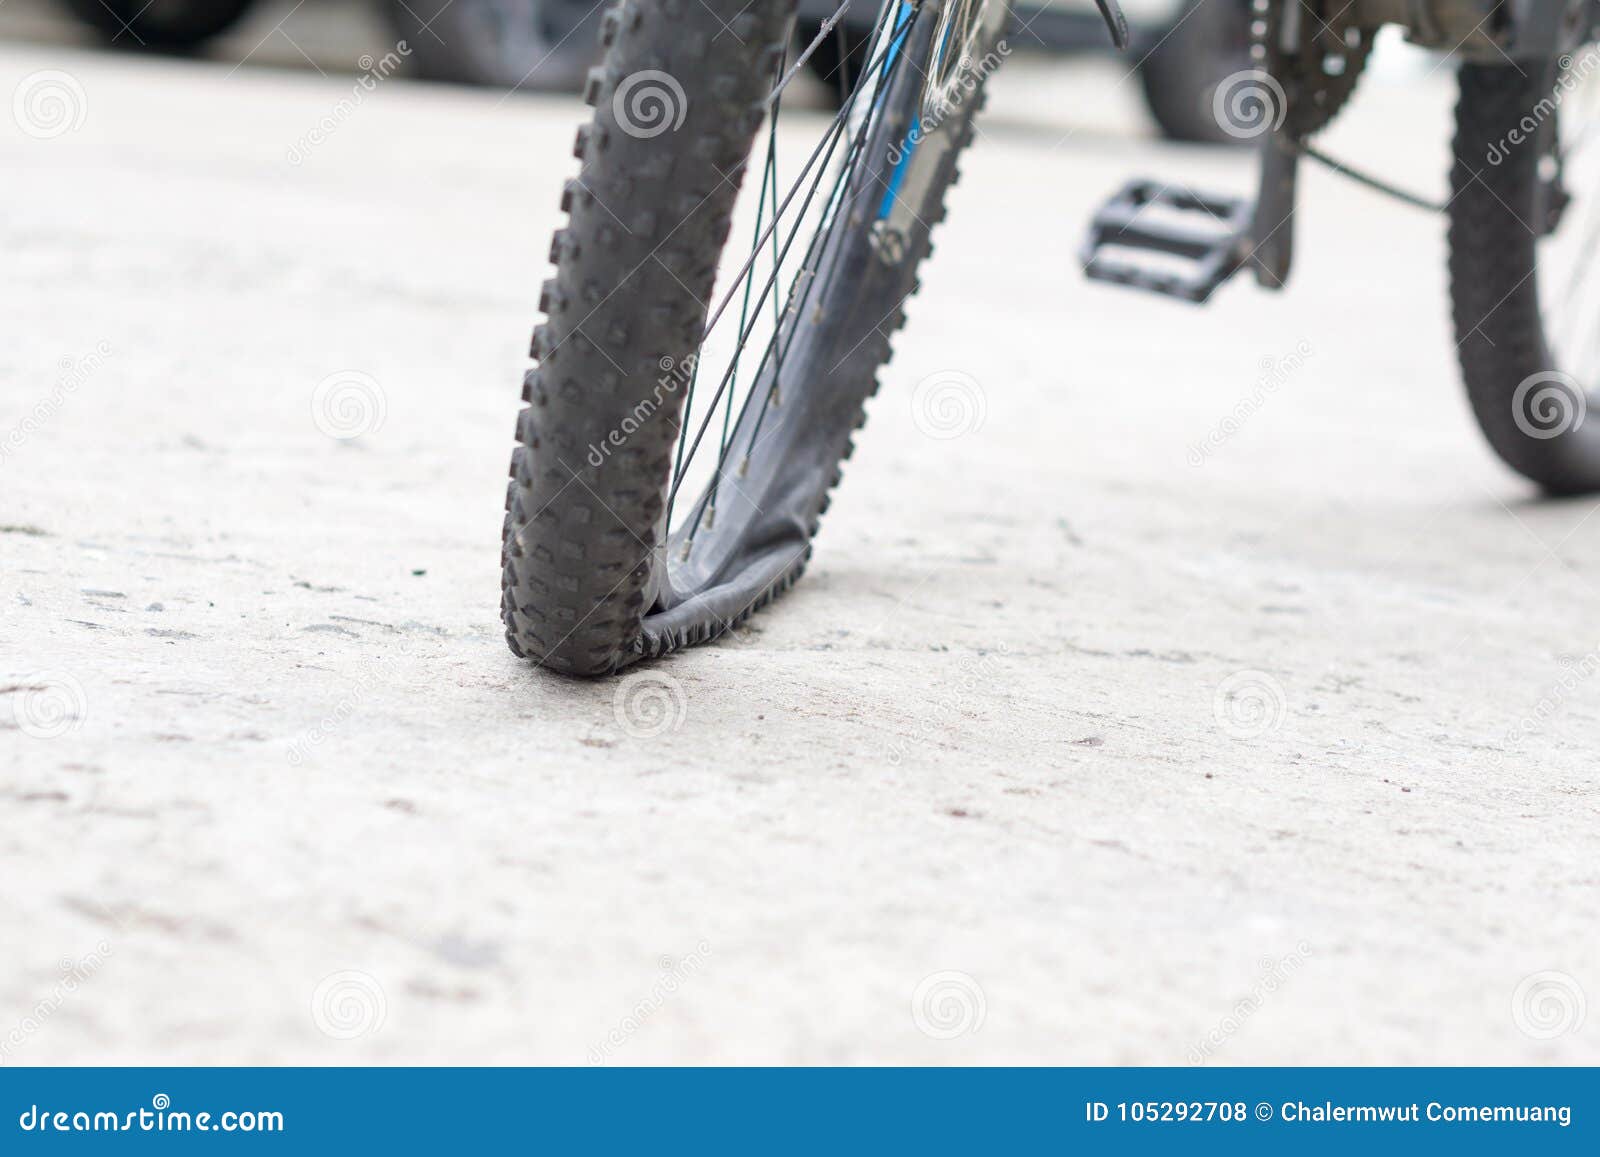 Сдувается колесо велосипеда. Спущенное колесо велосипеда. Велосипед со сдутыми шинами. Подспустило колесо велосипеда. Спускает шины на велосипеде.